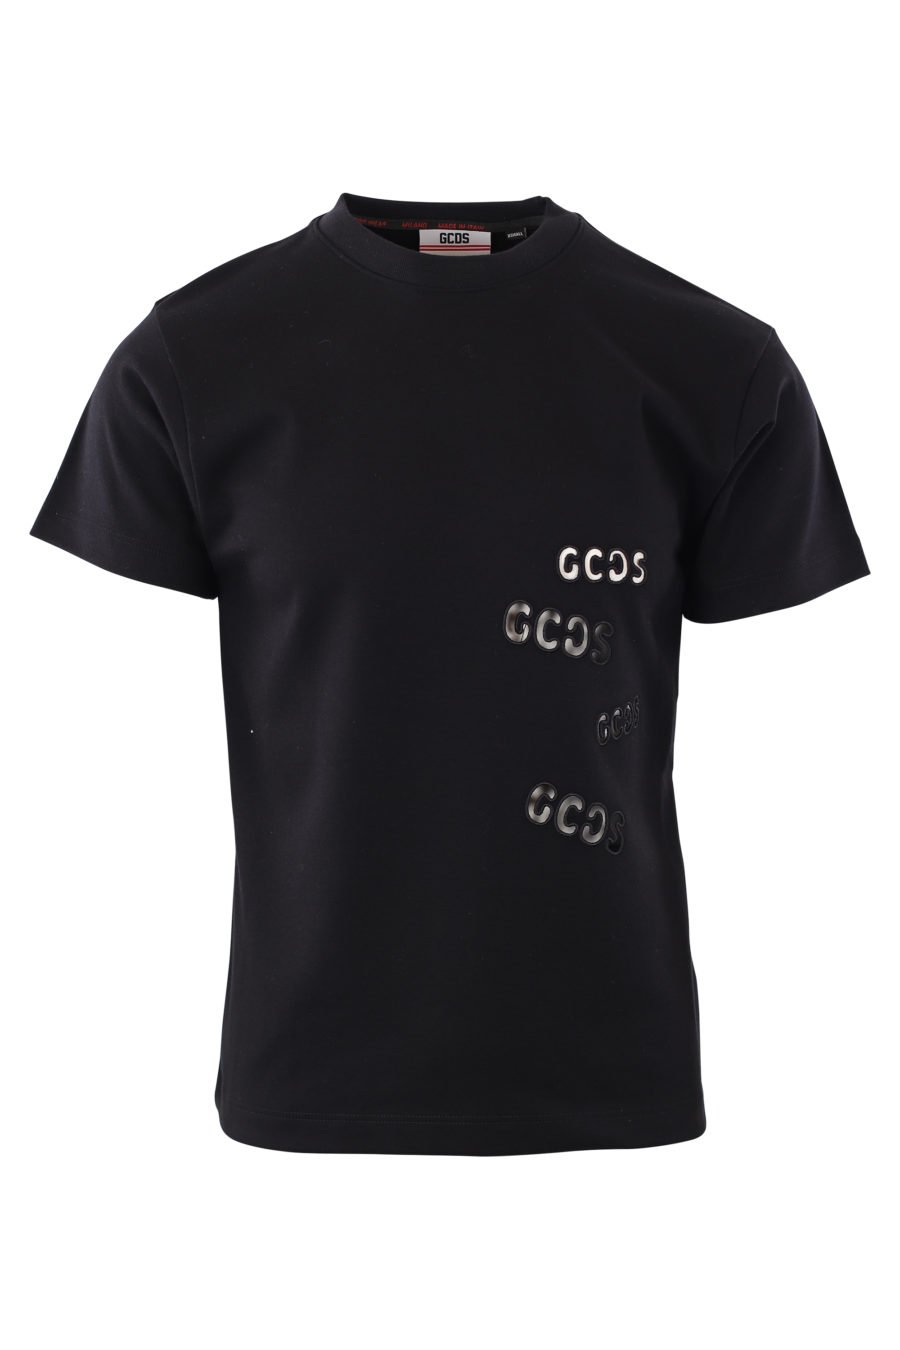 Schwarzes T-Shirt mit hohlem Logo - IMG 2045